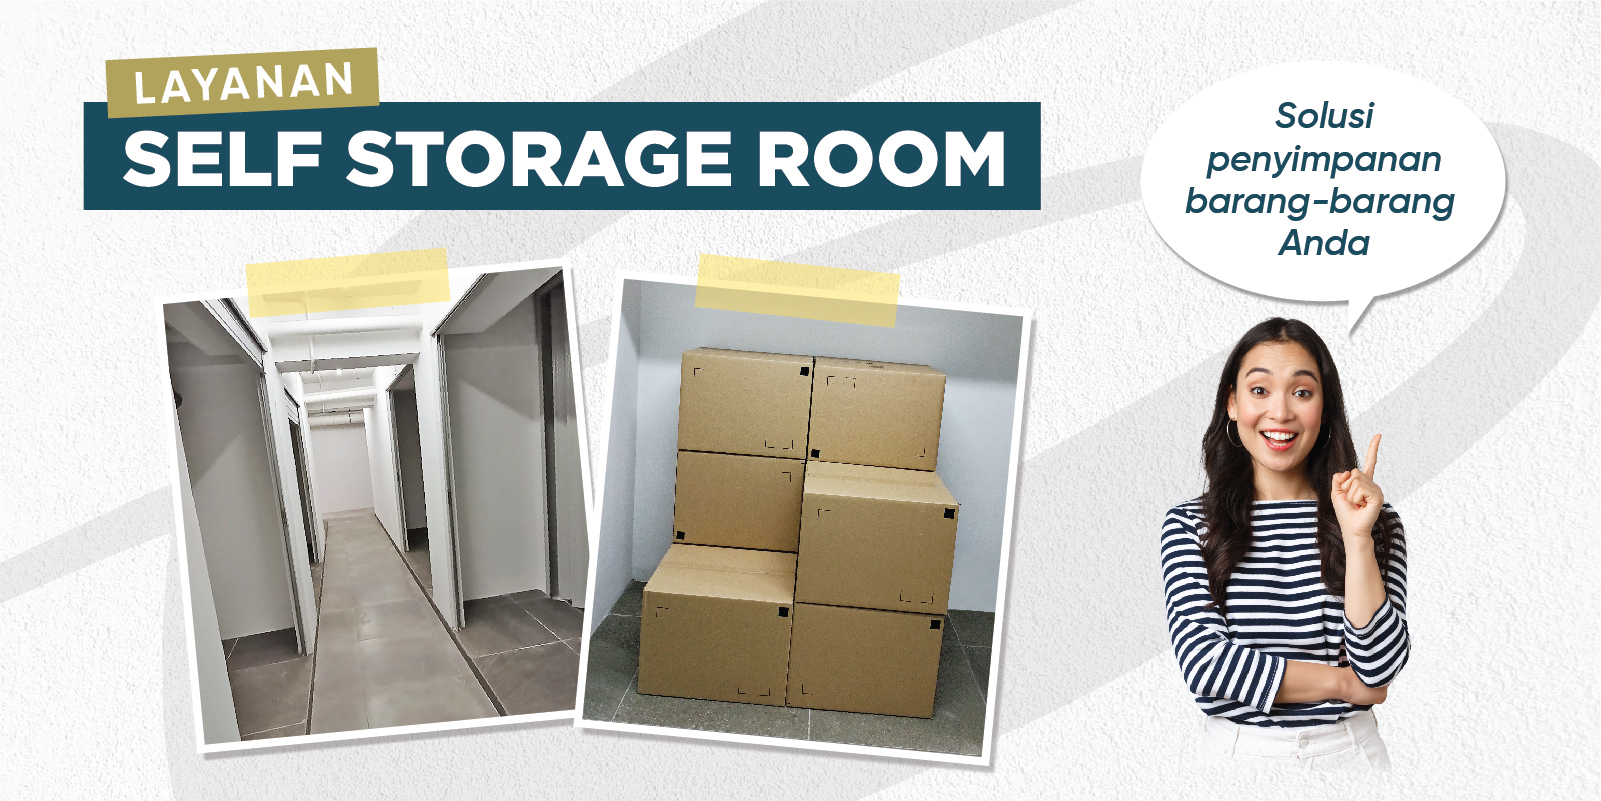 Punya Banyak Barang Tapi Tidak ada Tempat? Self Storage Room Solusinya!